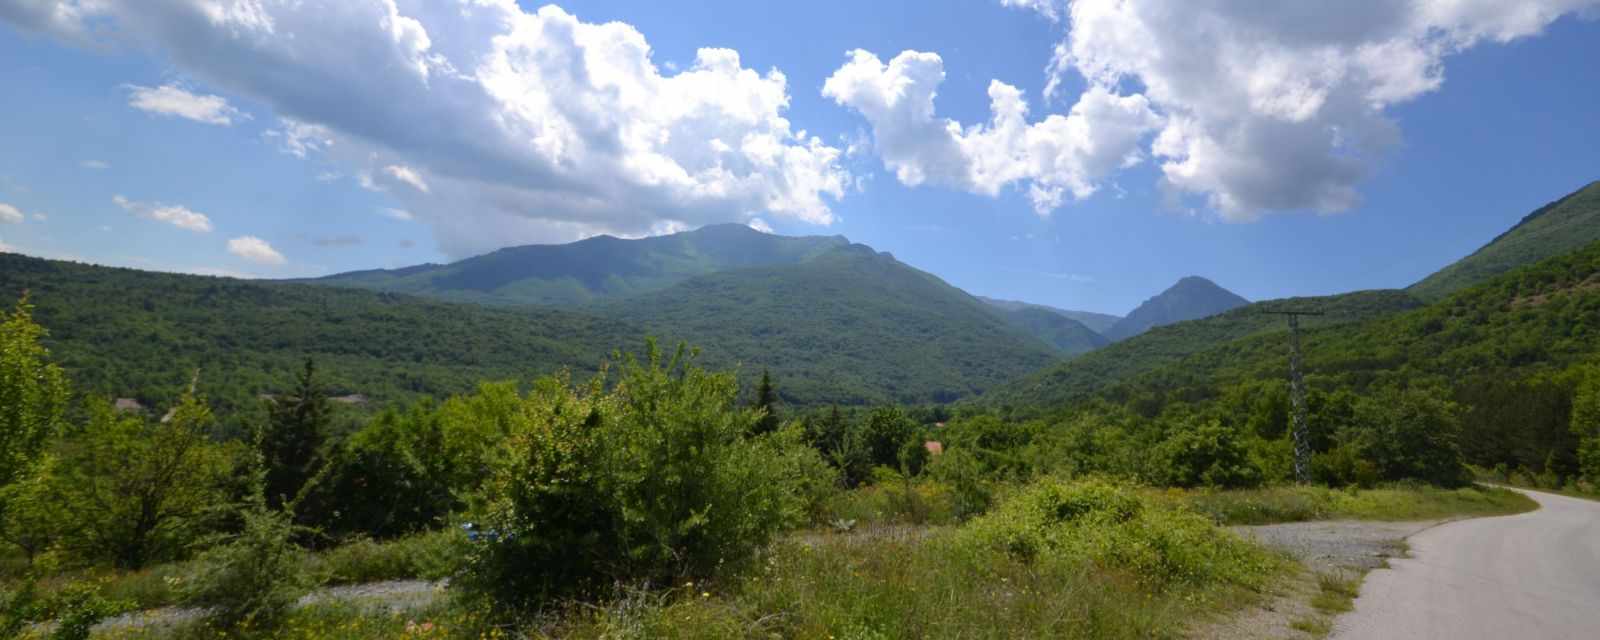 Kozuf Mountain near the Macedonian-Greek Border